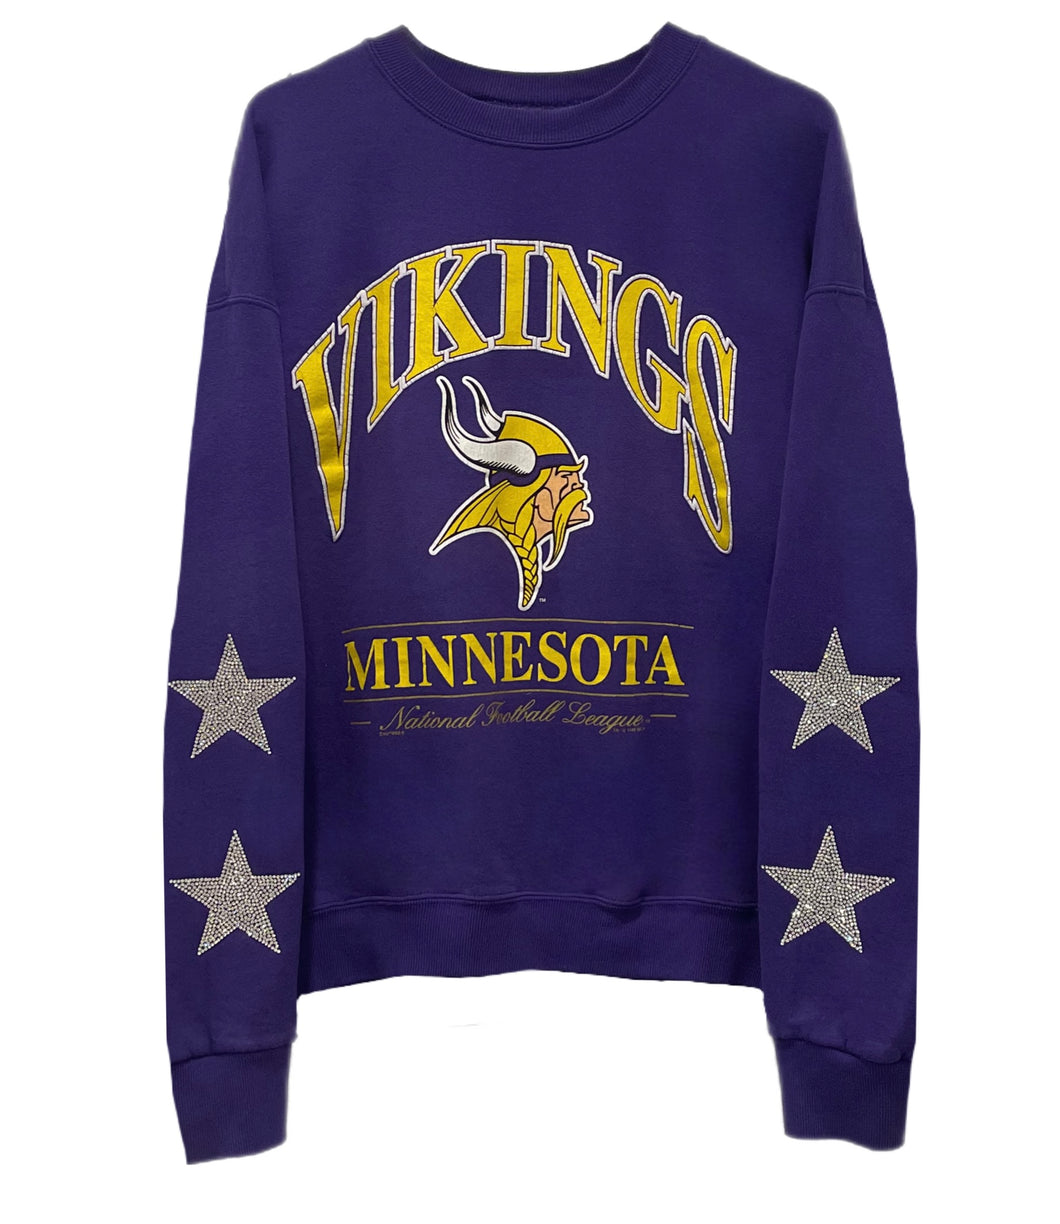 Minnesota Vikings, NFL One of a KIND Vintage Sweatshirt with Crystal Star Design.